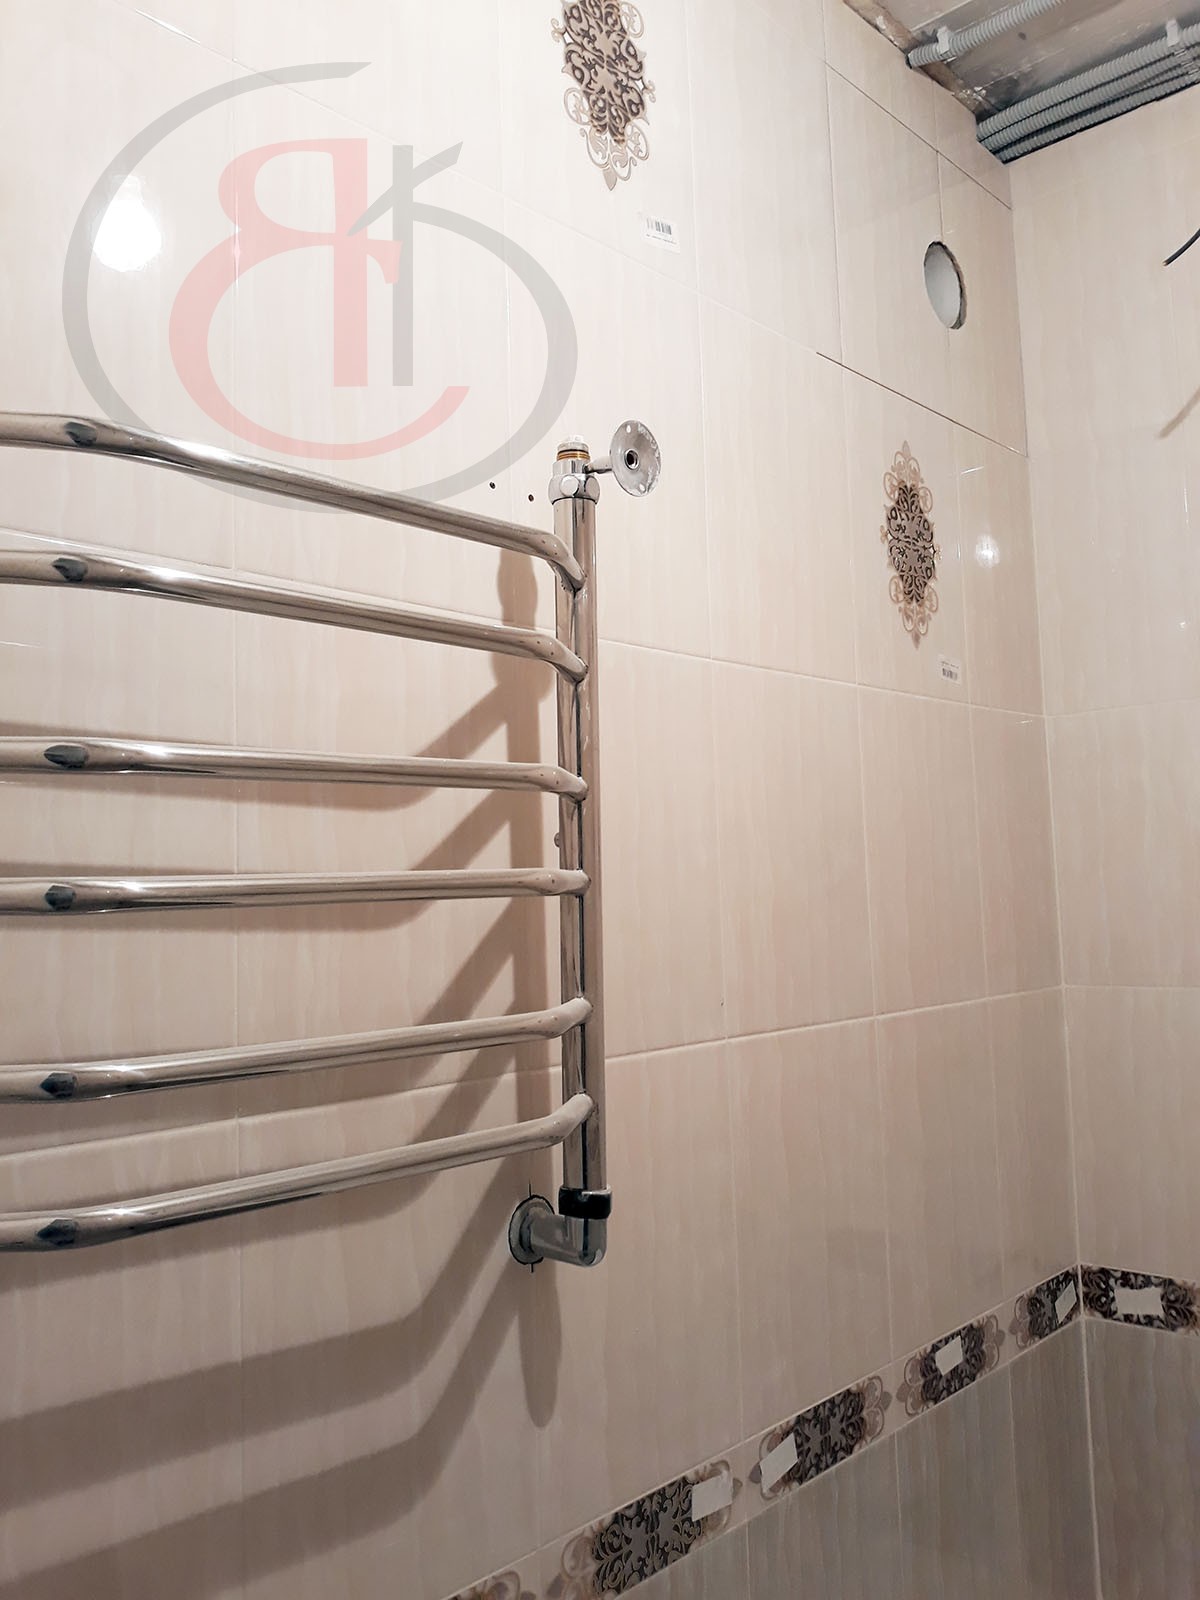 Достоинства качества в отделке ванной и туалета по ул. Беловежская, ПОСЛЕ (12)